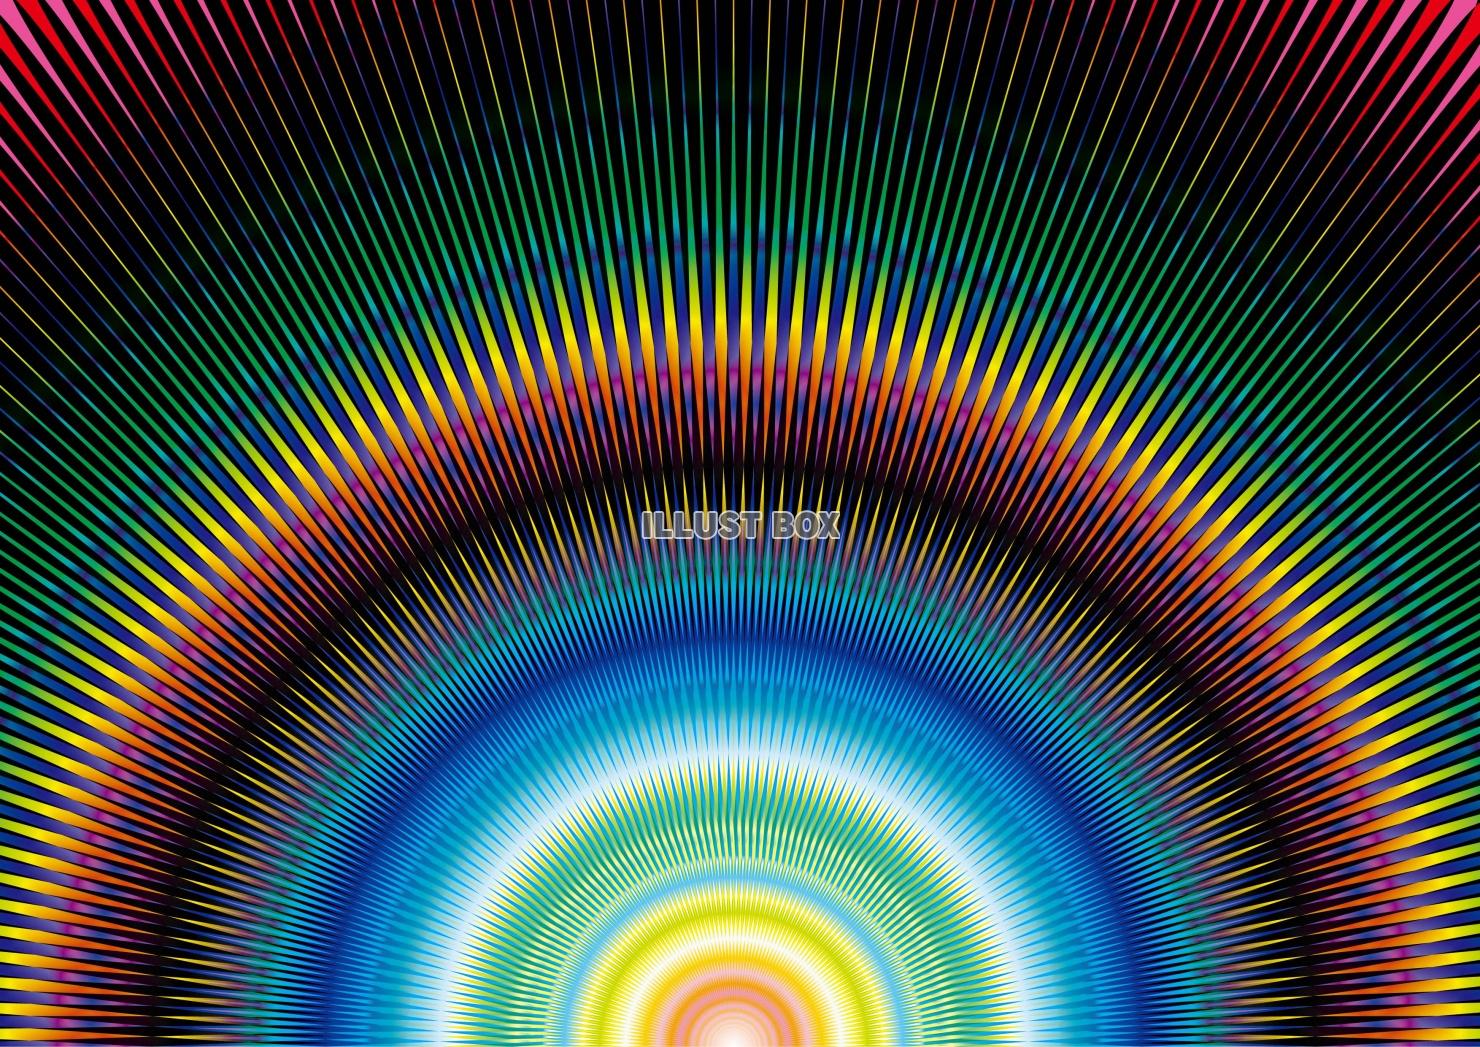 無料イラスト 虹色の放射線 壁紙 背景